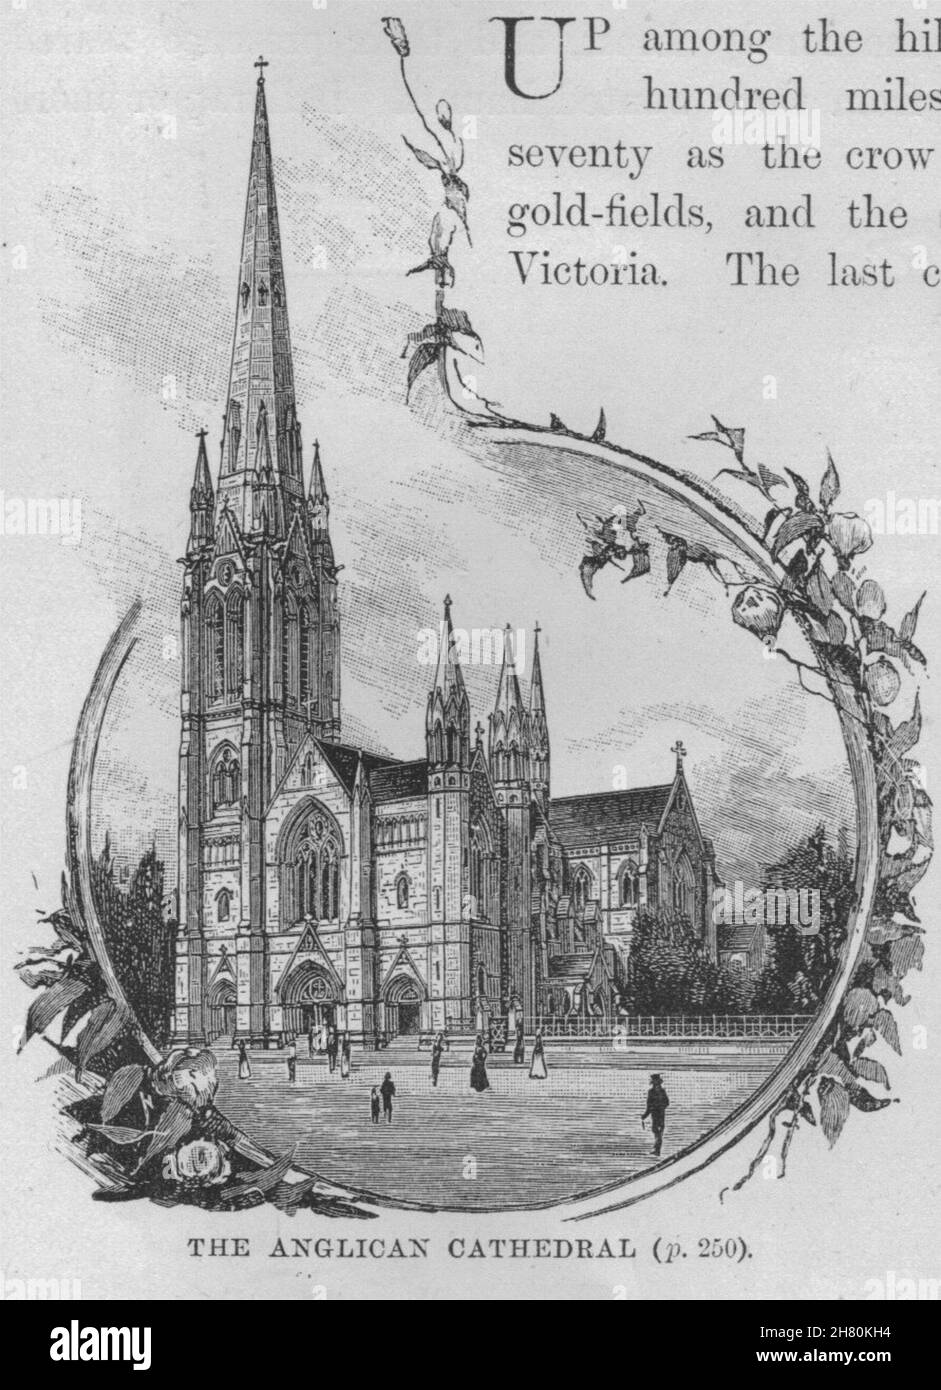 La Cattedrale Anglicana. Ballarat. Australia 1890 antica immagine di stampa Foto Stock